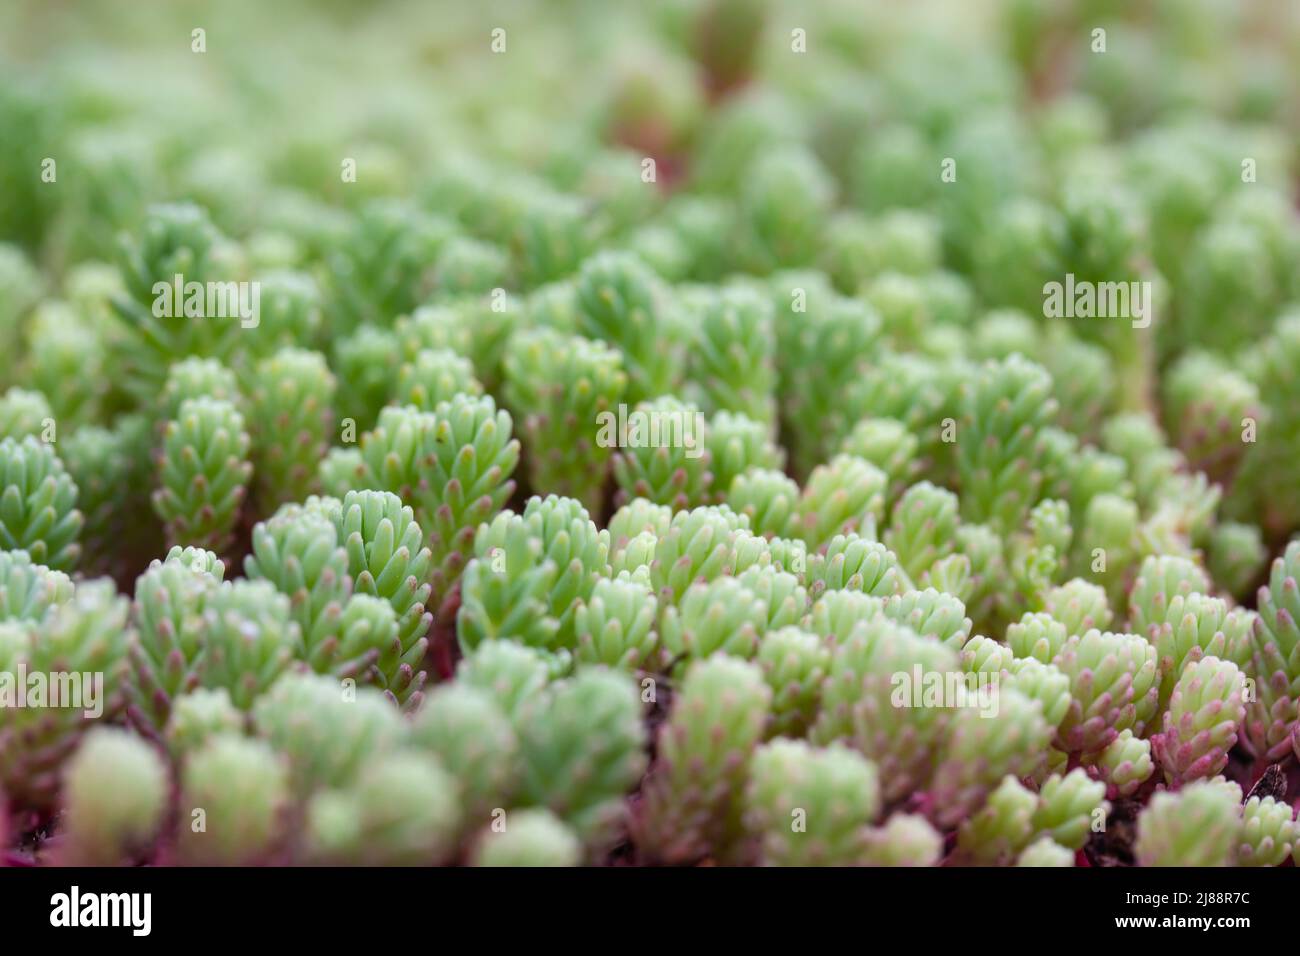 Sedum hispanicum green carpet. Sedum rubrotinctum jelly bean succulent plant. Stock Photo